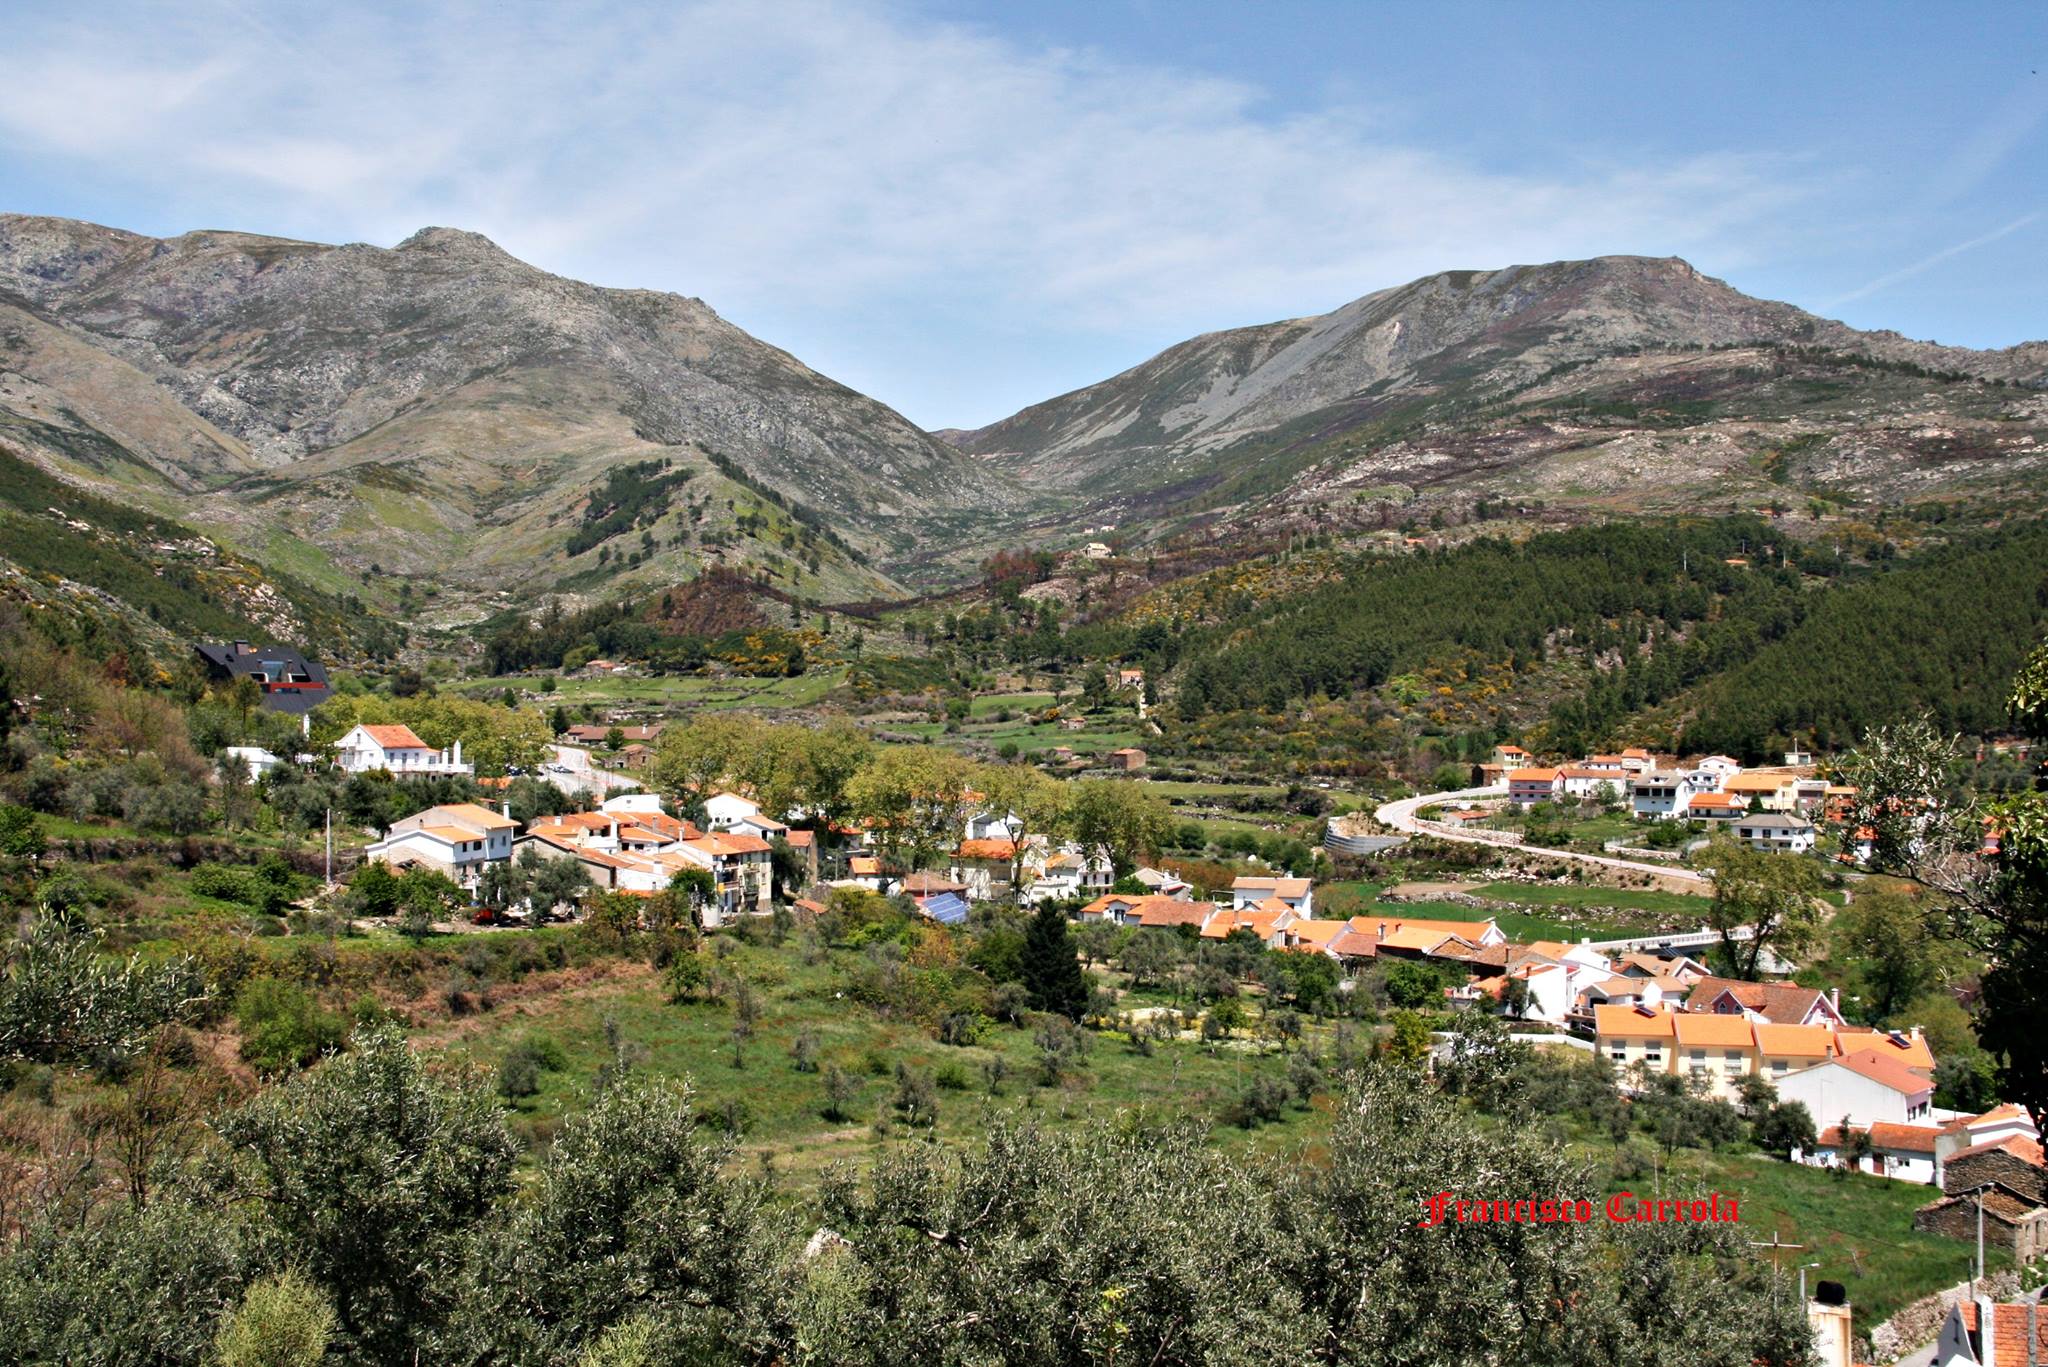 Vila de Unhais da Serra. Fonte: Francisco Carrola